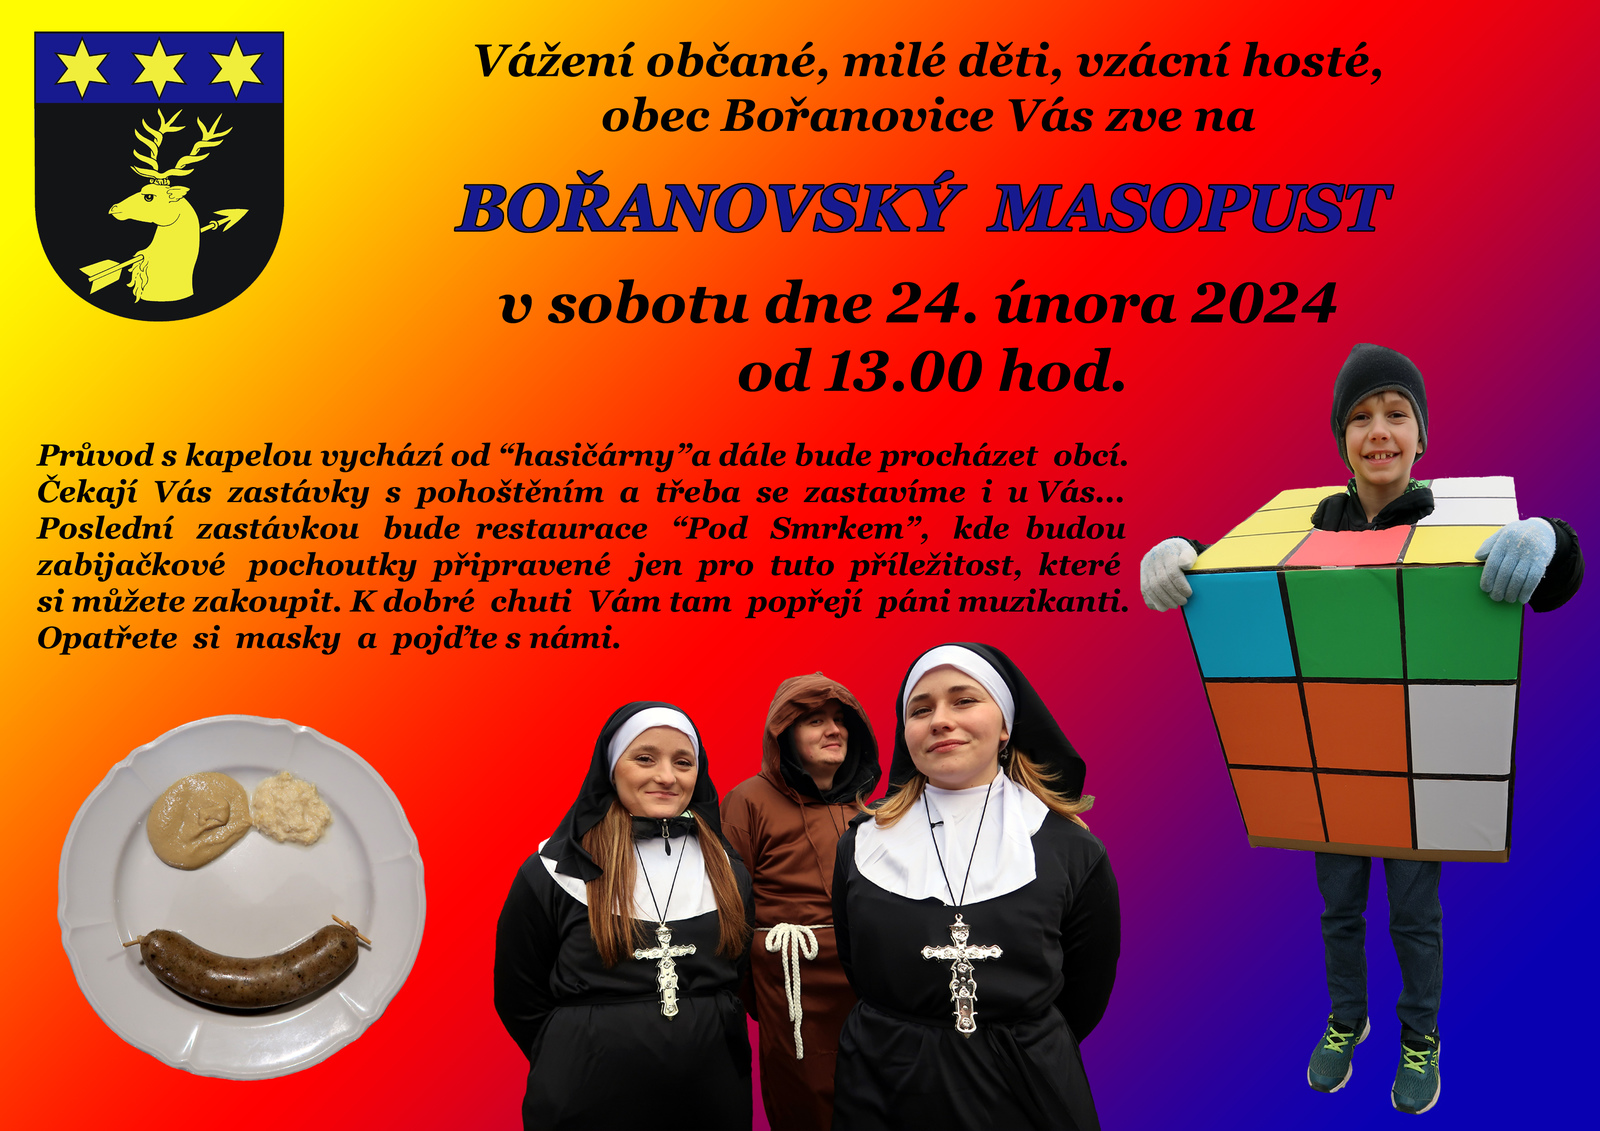 Plakát - Bořanovský masopust 2024.jpg